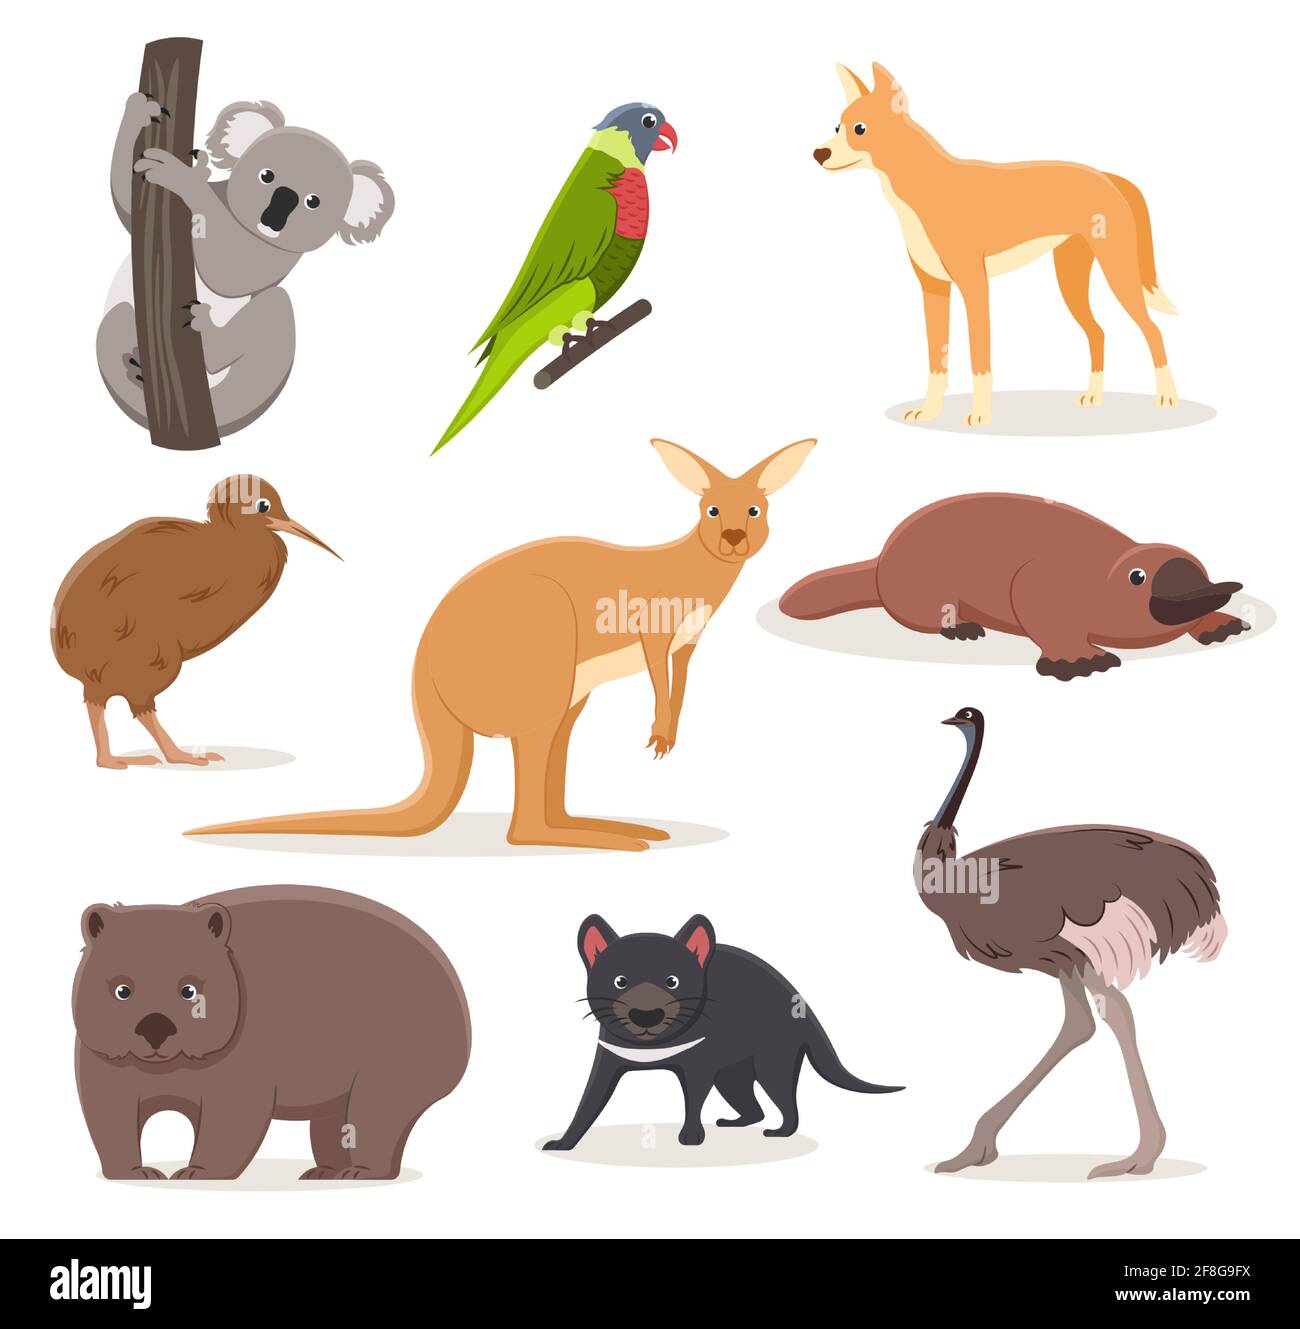 Set von lustigen Comic-australischen Tieren - emu, Strauß, Koala auf einem Zweig, Tasmanischer Teufel, Dingohund, Schnabeltiere, Kiwi-Vogel und Wombat Stock Vektor